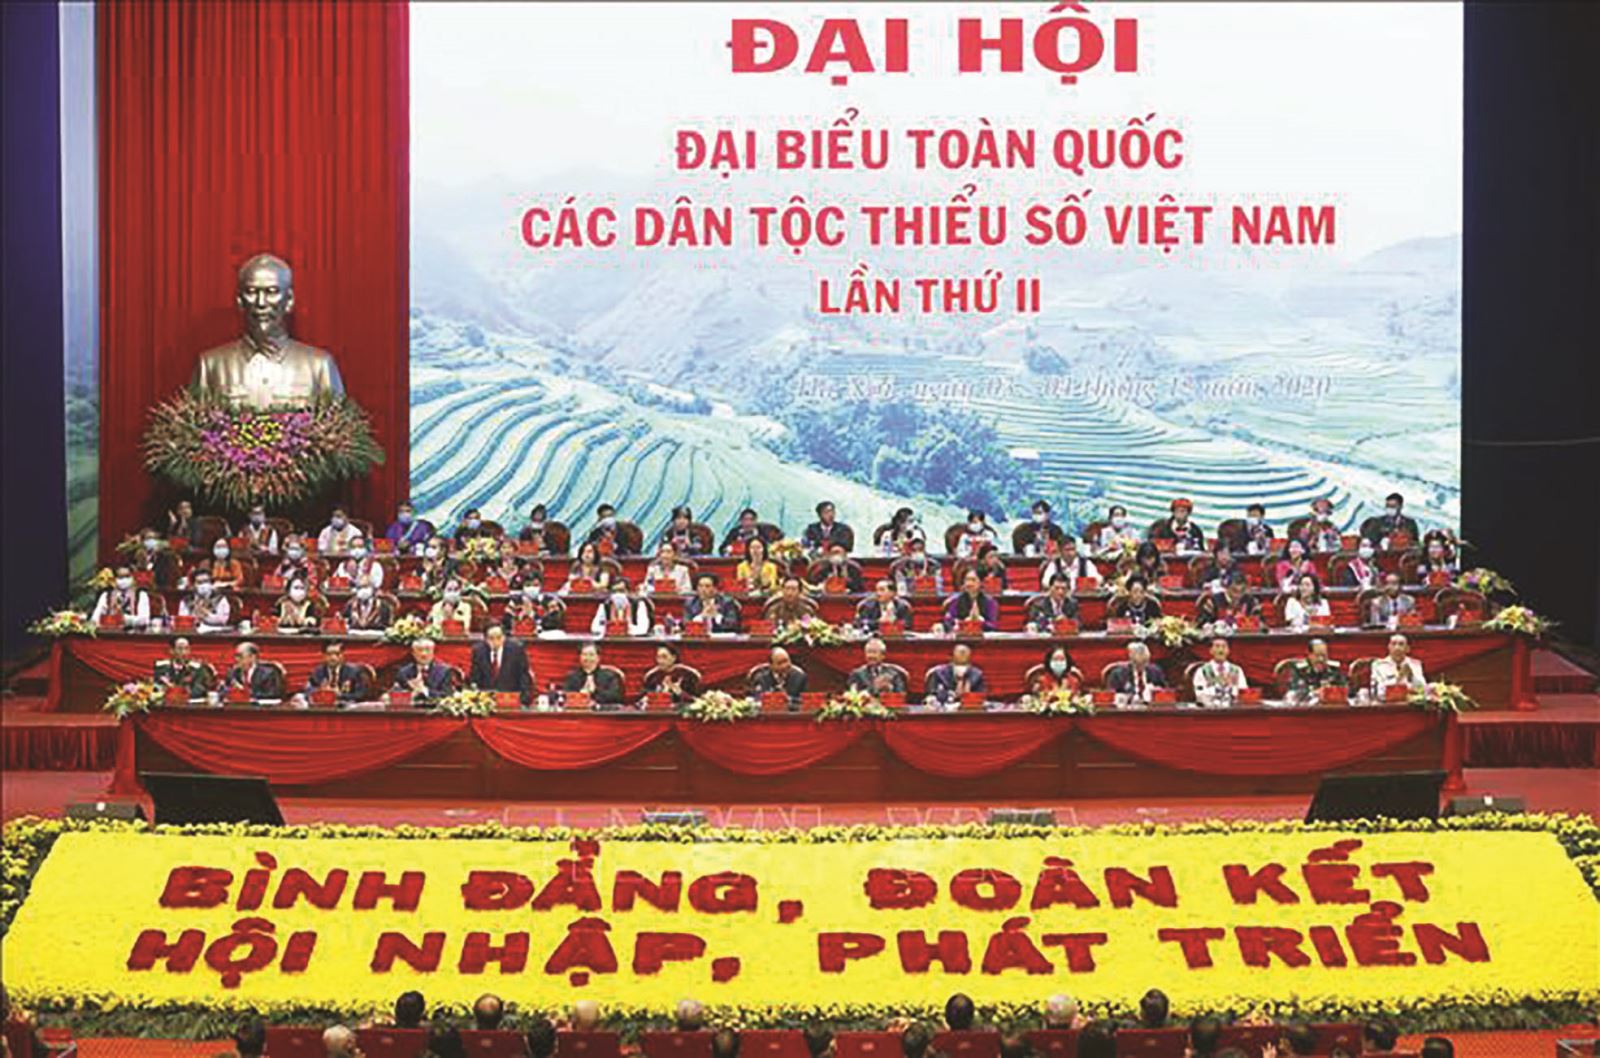 Đại hội Đại biểu toàn quốc các Dân tộc thiểu số Việt Nam lần Thứ II năm 2020